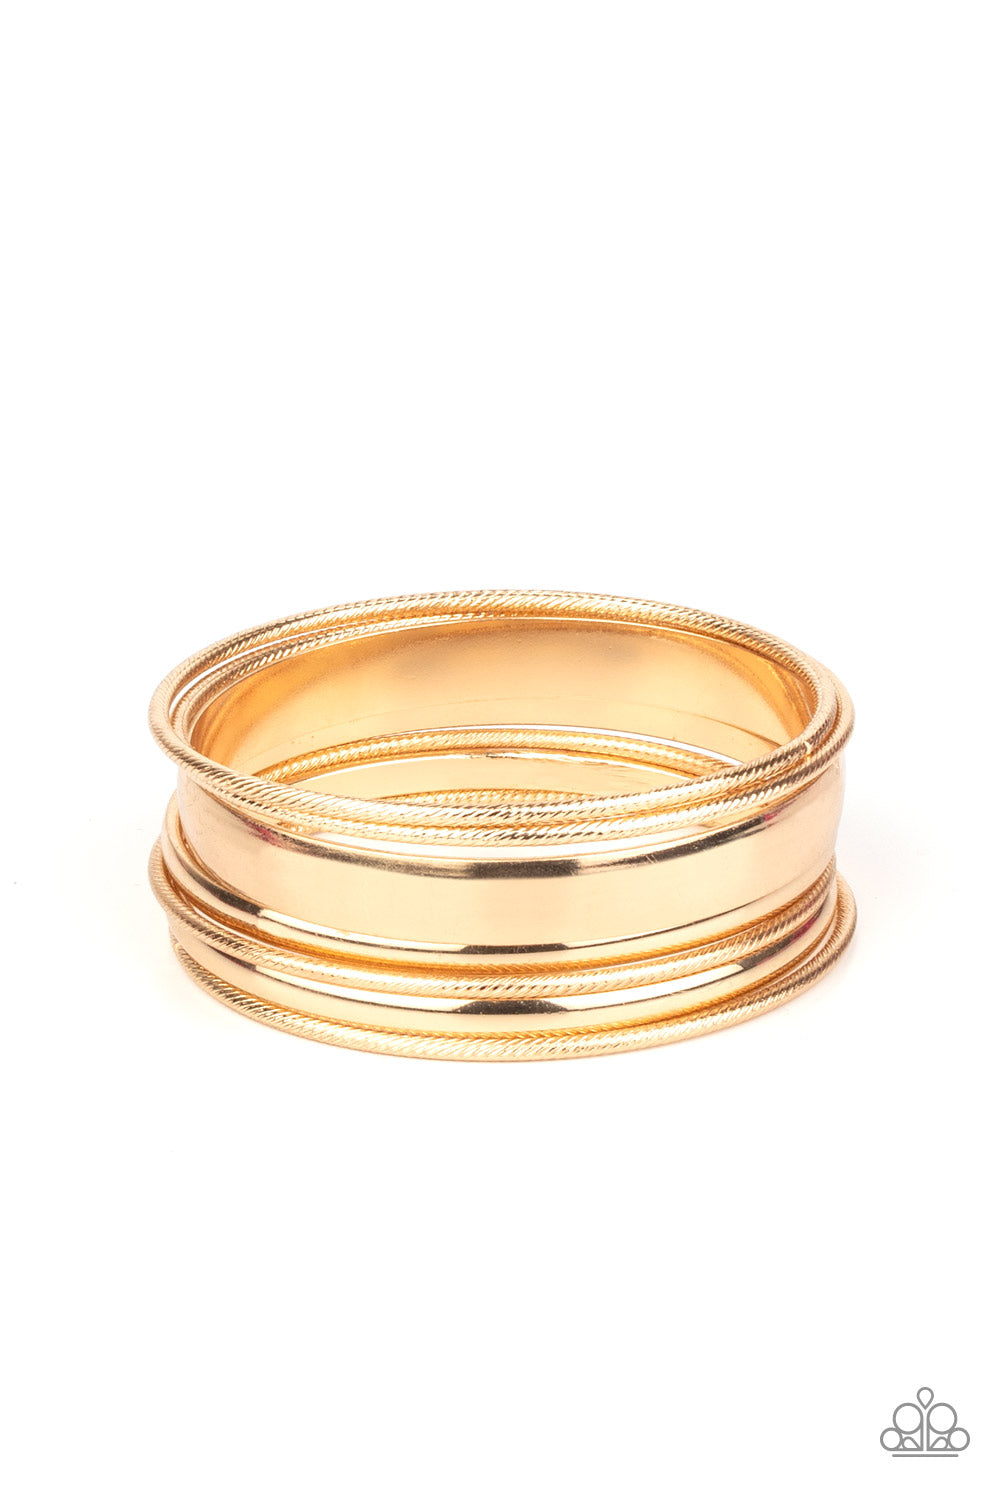 Sahara Shimmer - Gold bracelet